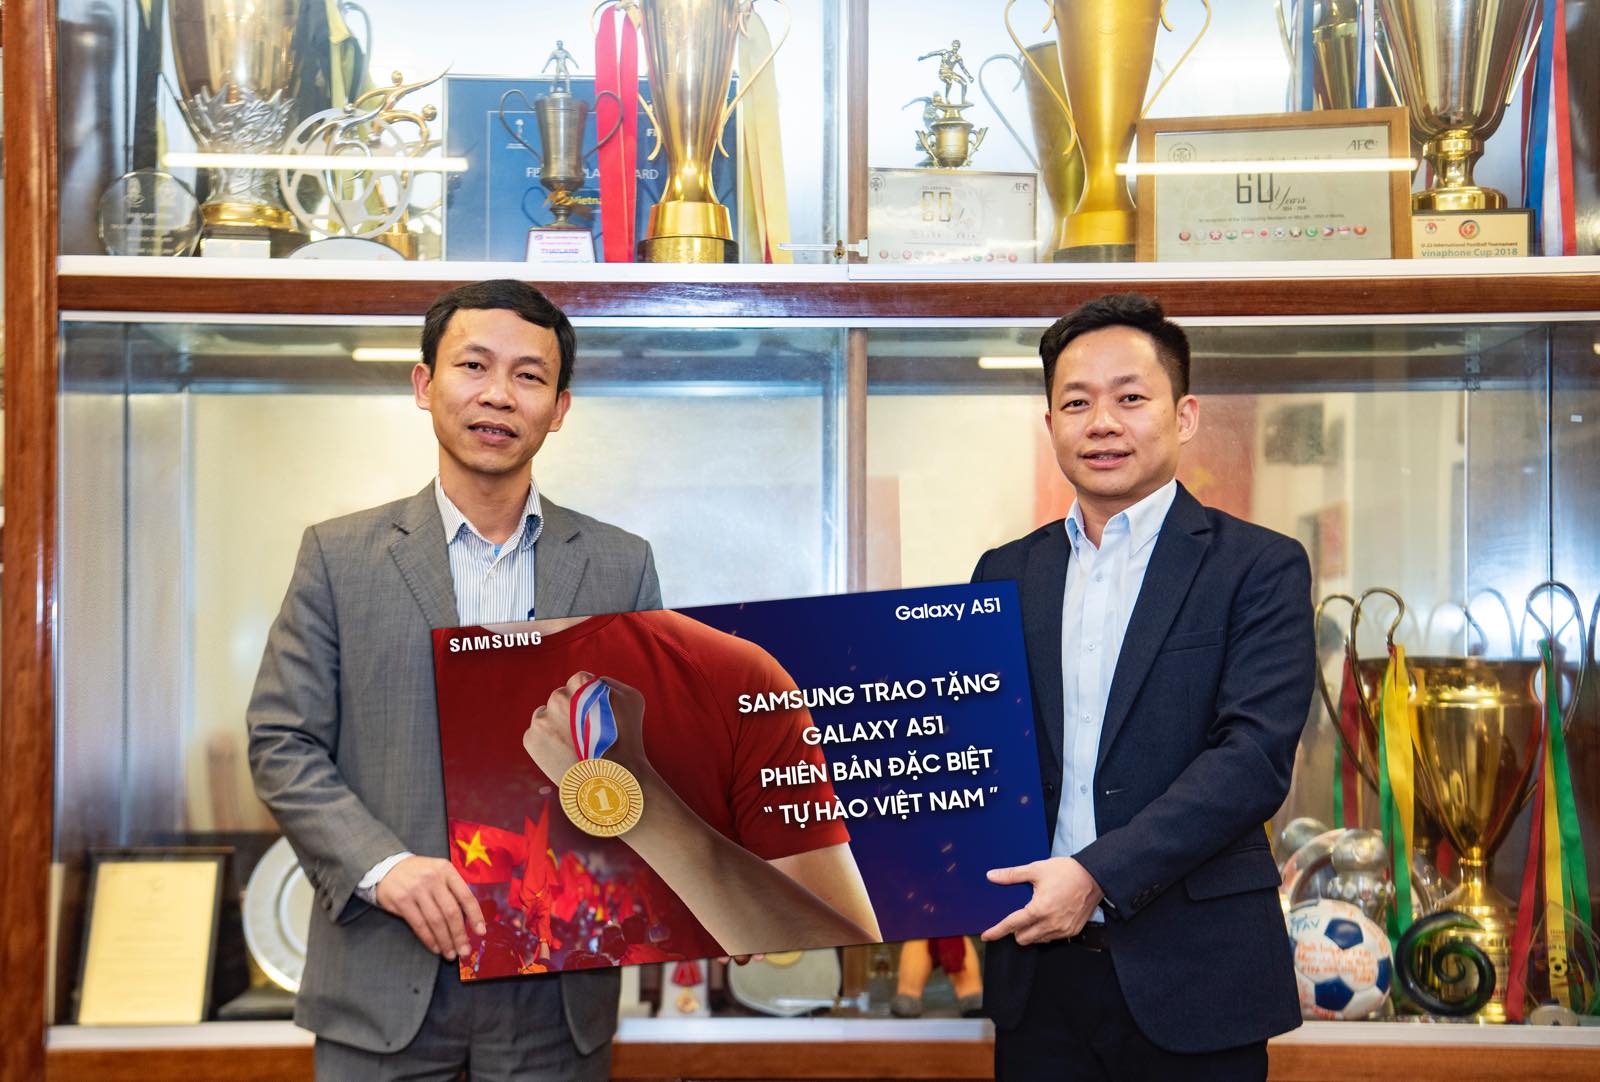 Samsung tặng Galaxy A51 Phiên bản đặc biệt “Tự Hào Việt Nam” cho Đội tuyển Bóng đá Nam và Nữ vừa đoạt Huy Chương Vàng tại SEA GAMES 2019